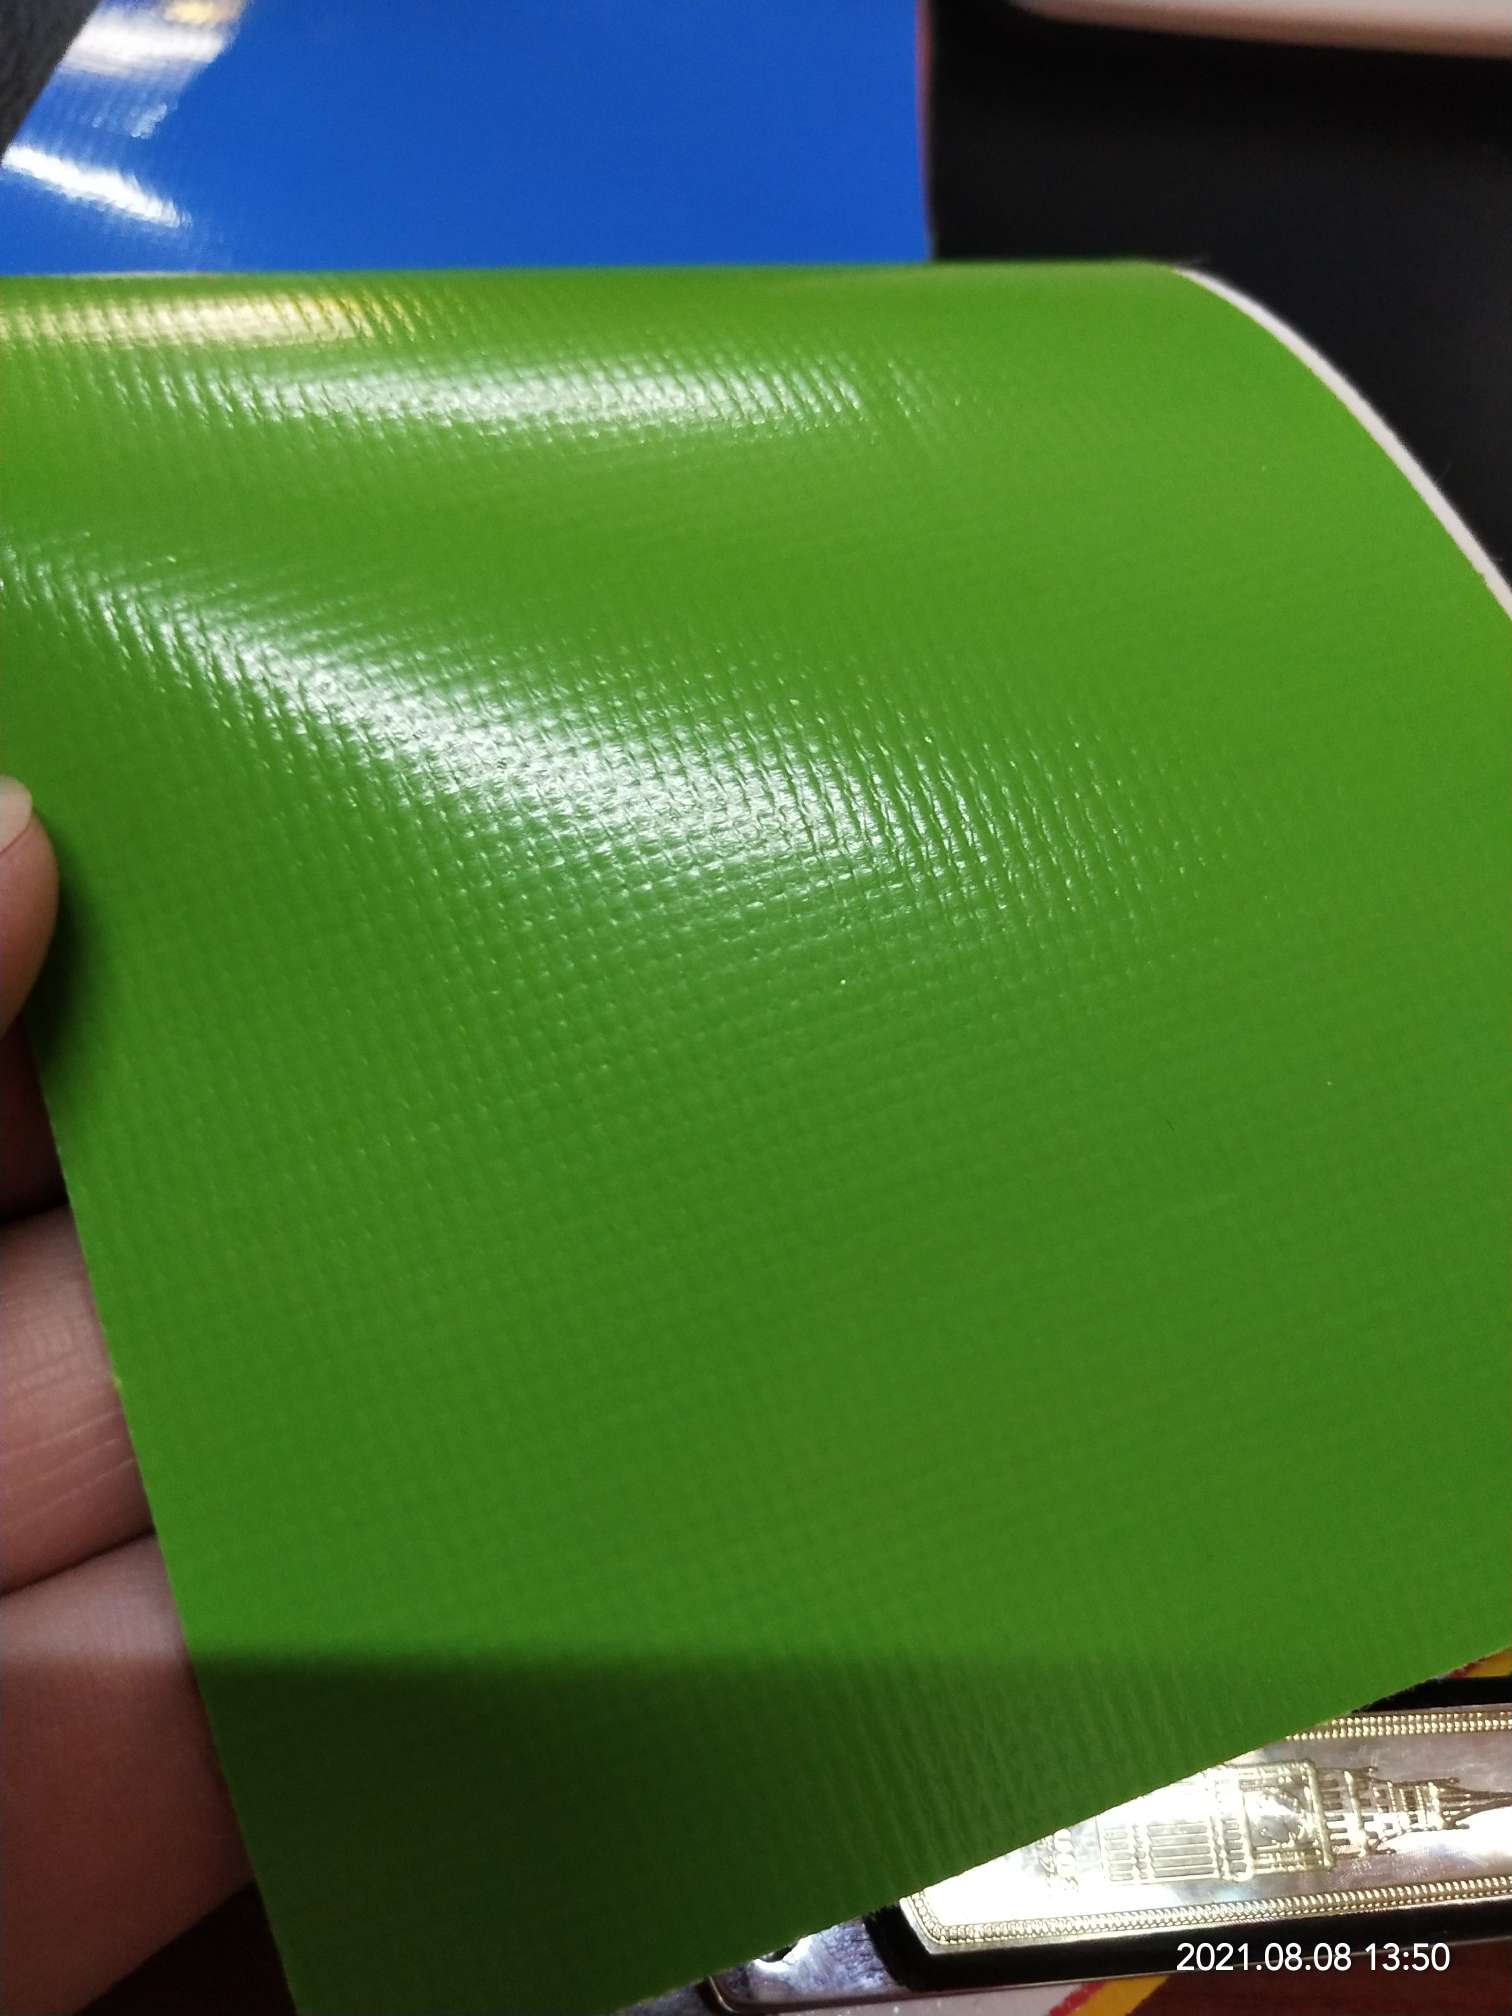 优质光面0.47mm厚浅绿色PVC夹网布  箱包布  机器罩家具罩  体育游乐产品  格种箱包袋专用面料详情图6